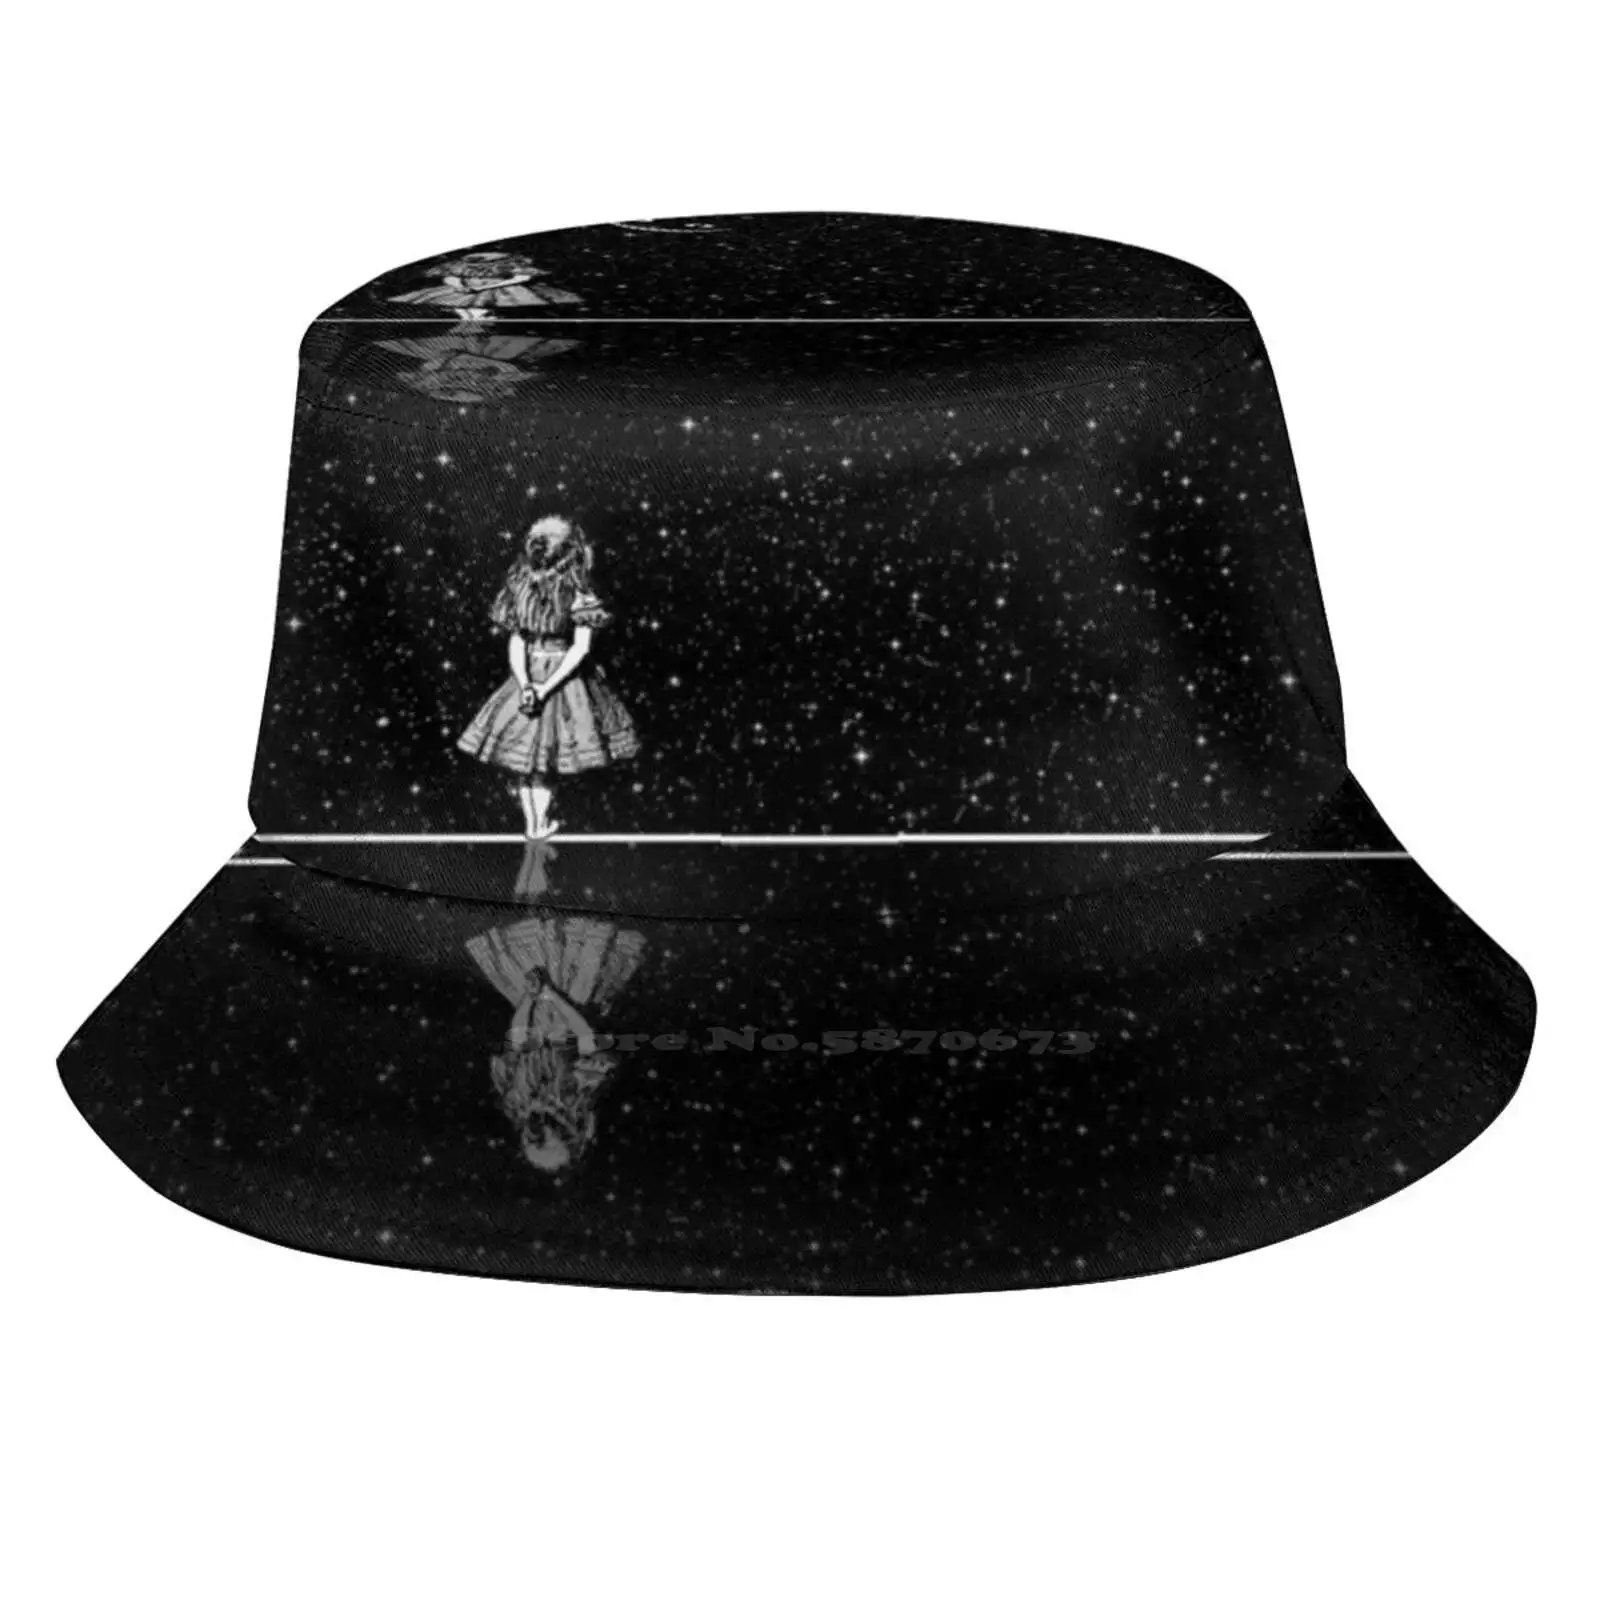 

Панама Алиса в стиле звездной ночи, шляпа для отдыха на открытом воздухе, для рыбалки от солнца, с изображением Кота Алисы, Чеширского звездн...